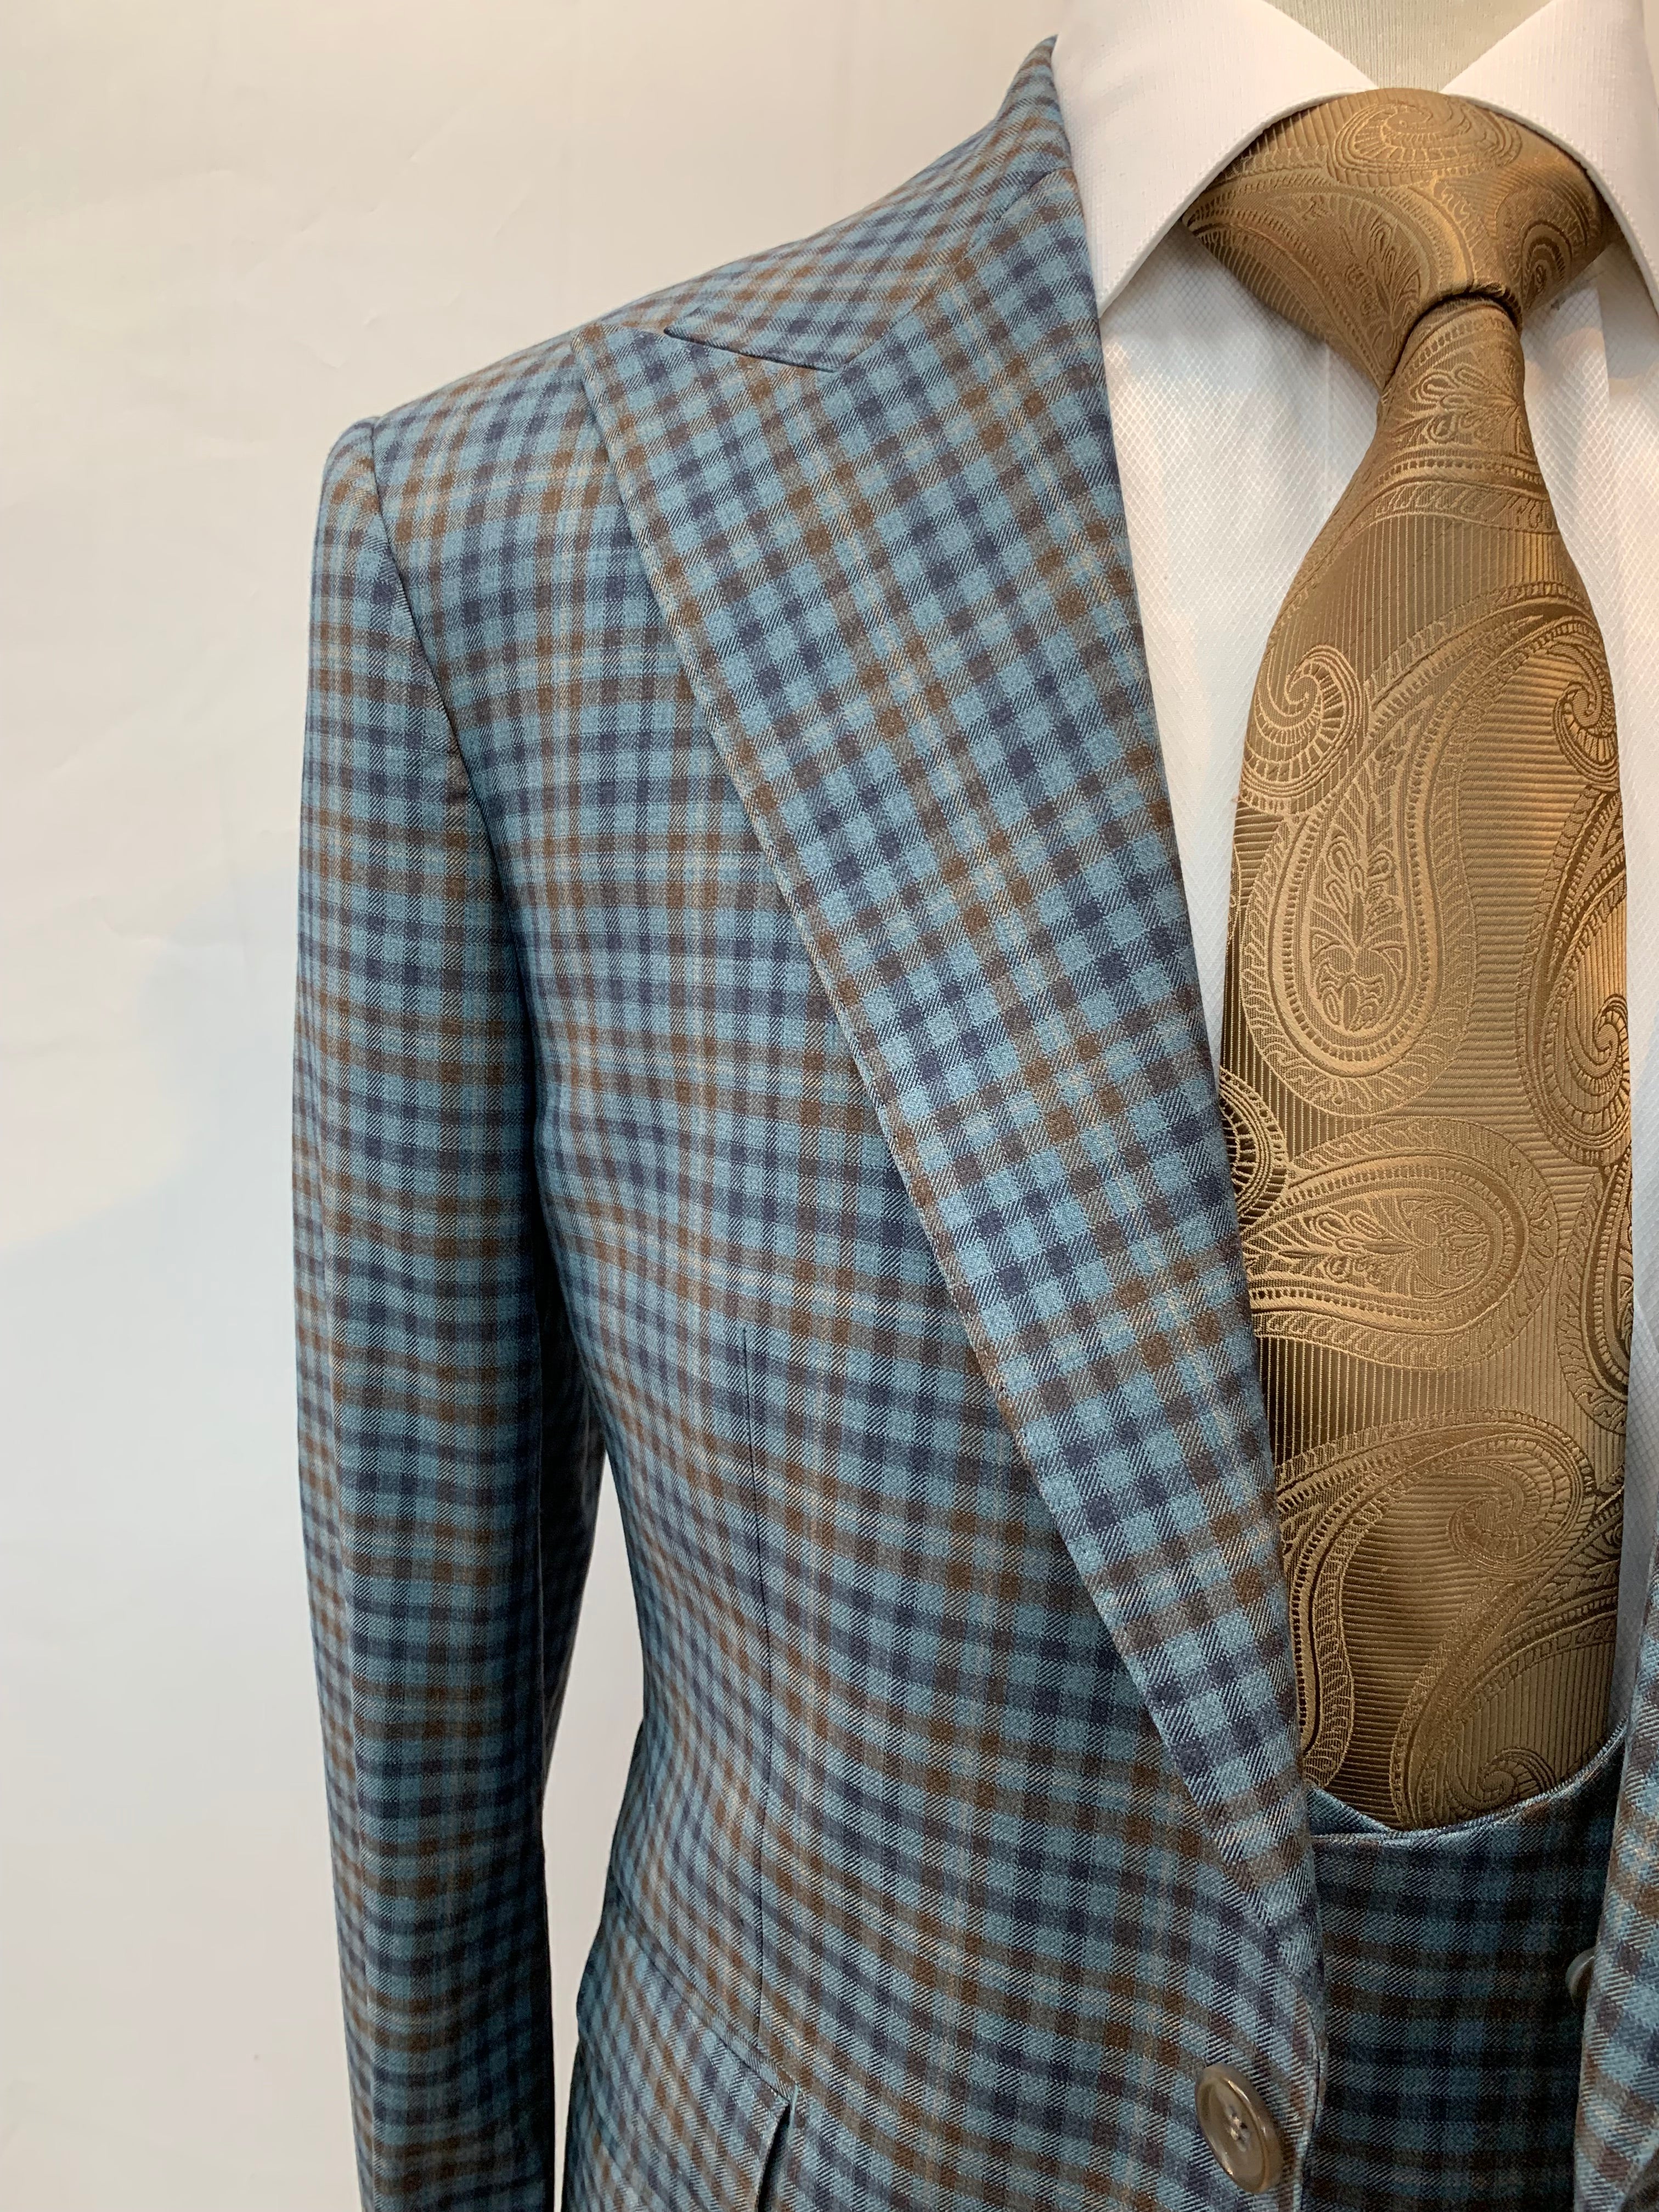 Berragamo Blue/Brown Plaid 3pc Suit